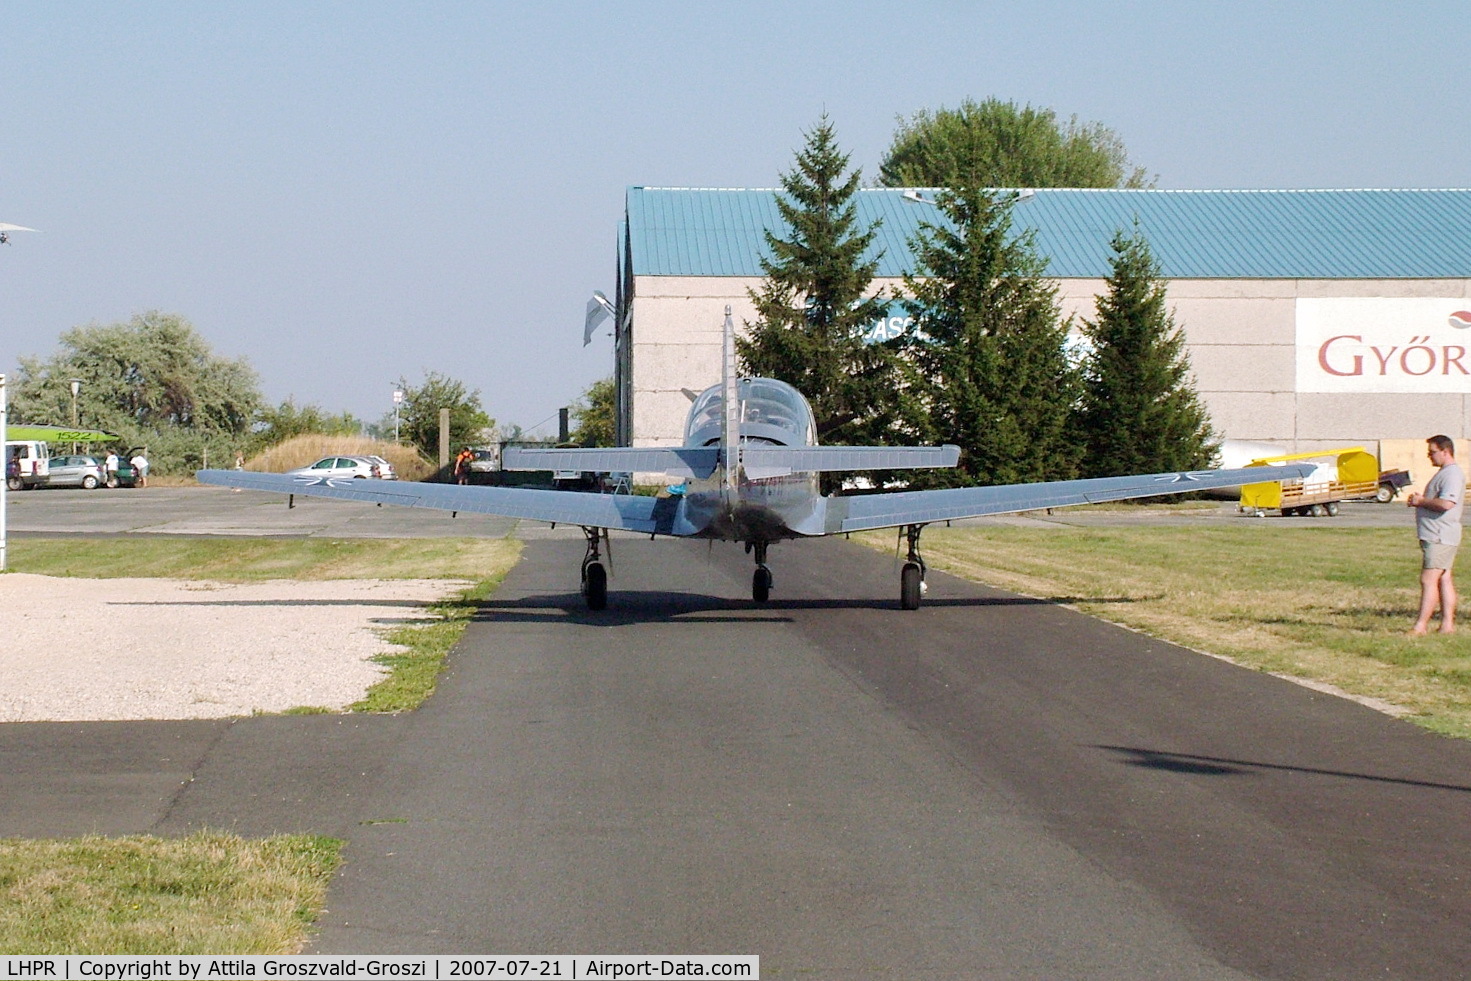 Gy?r Pér Airport, Gy?r, Pér Hungary (LHPR) - Road to the hangar.